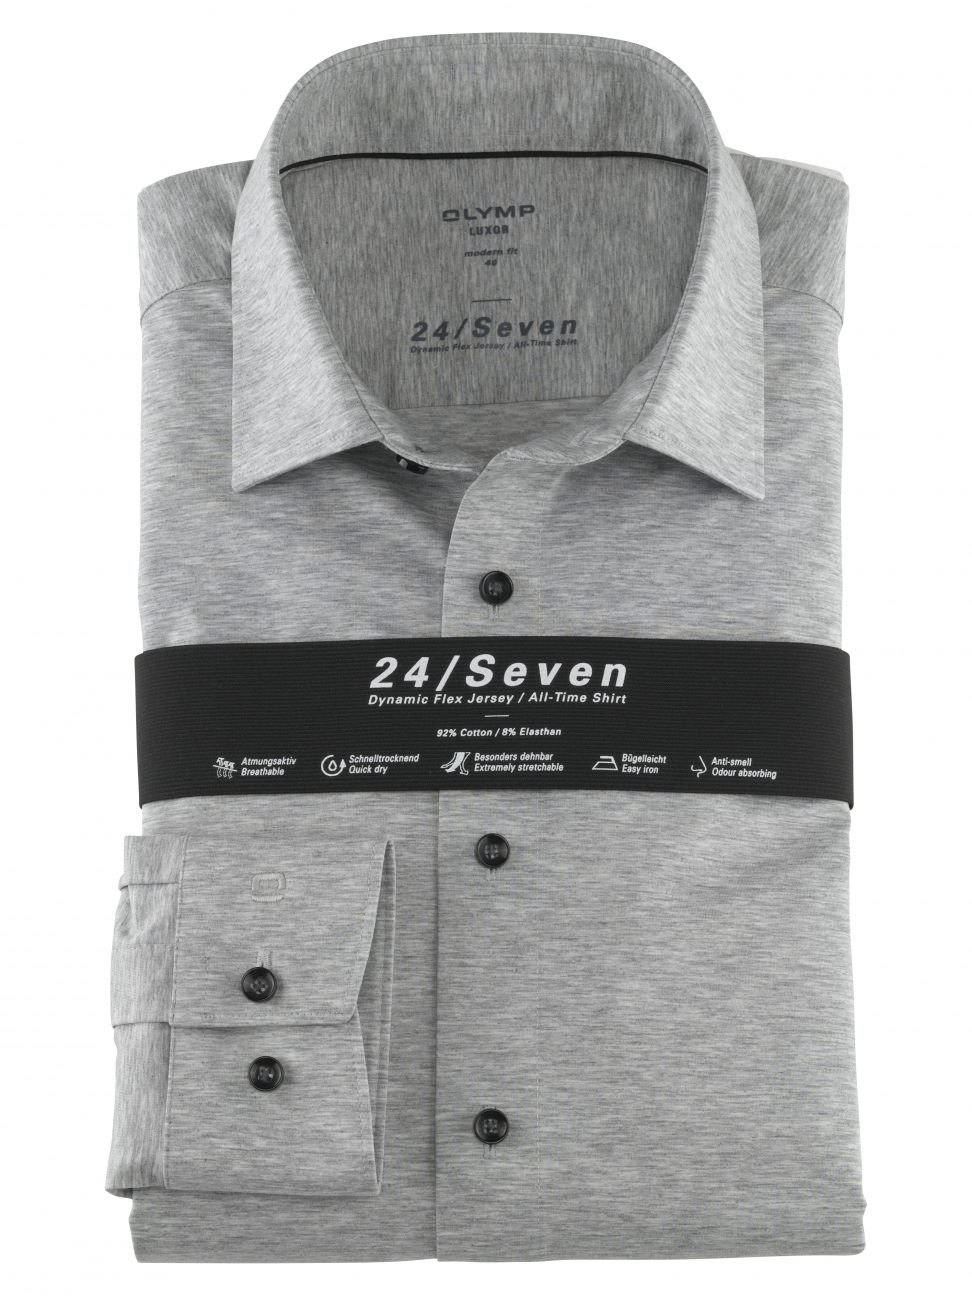 Koszula OLYMP Luxor 24/Seven modern fit, Business shirt, New Kent, Szara /12026463